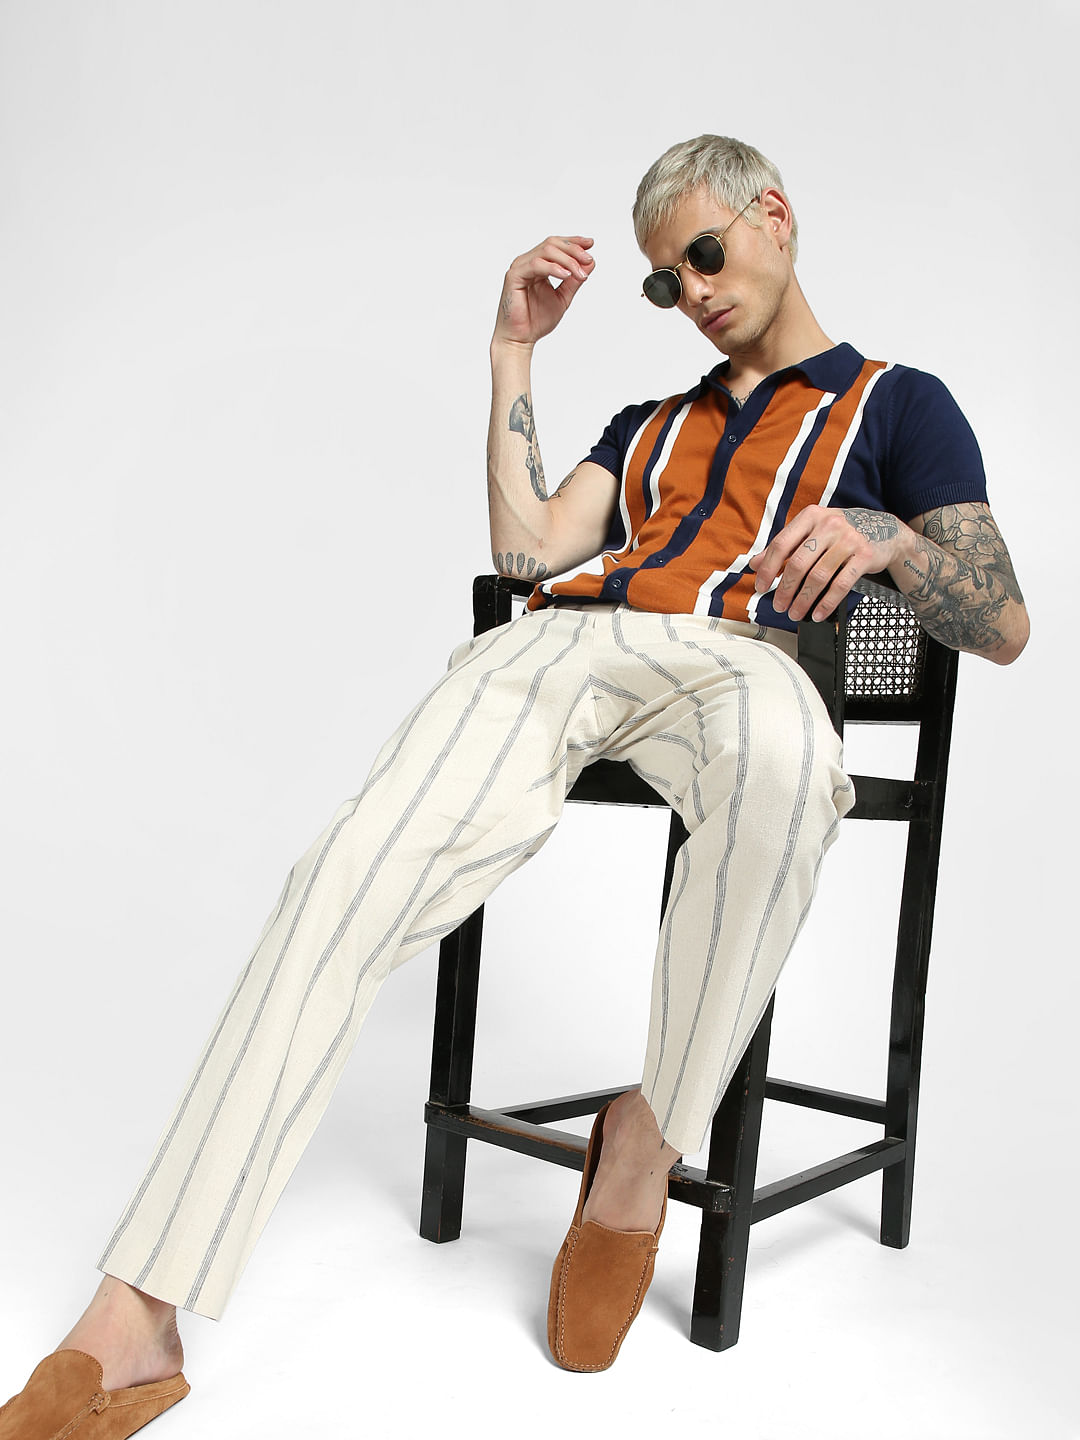 19 个最佳 Striped pants men style 点子